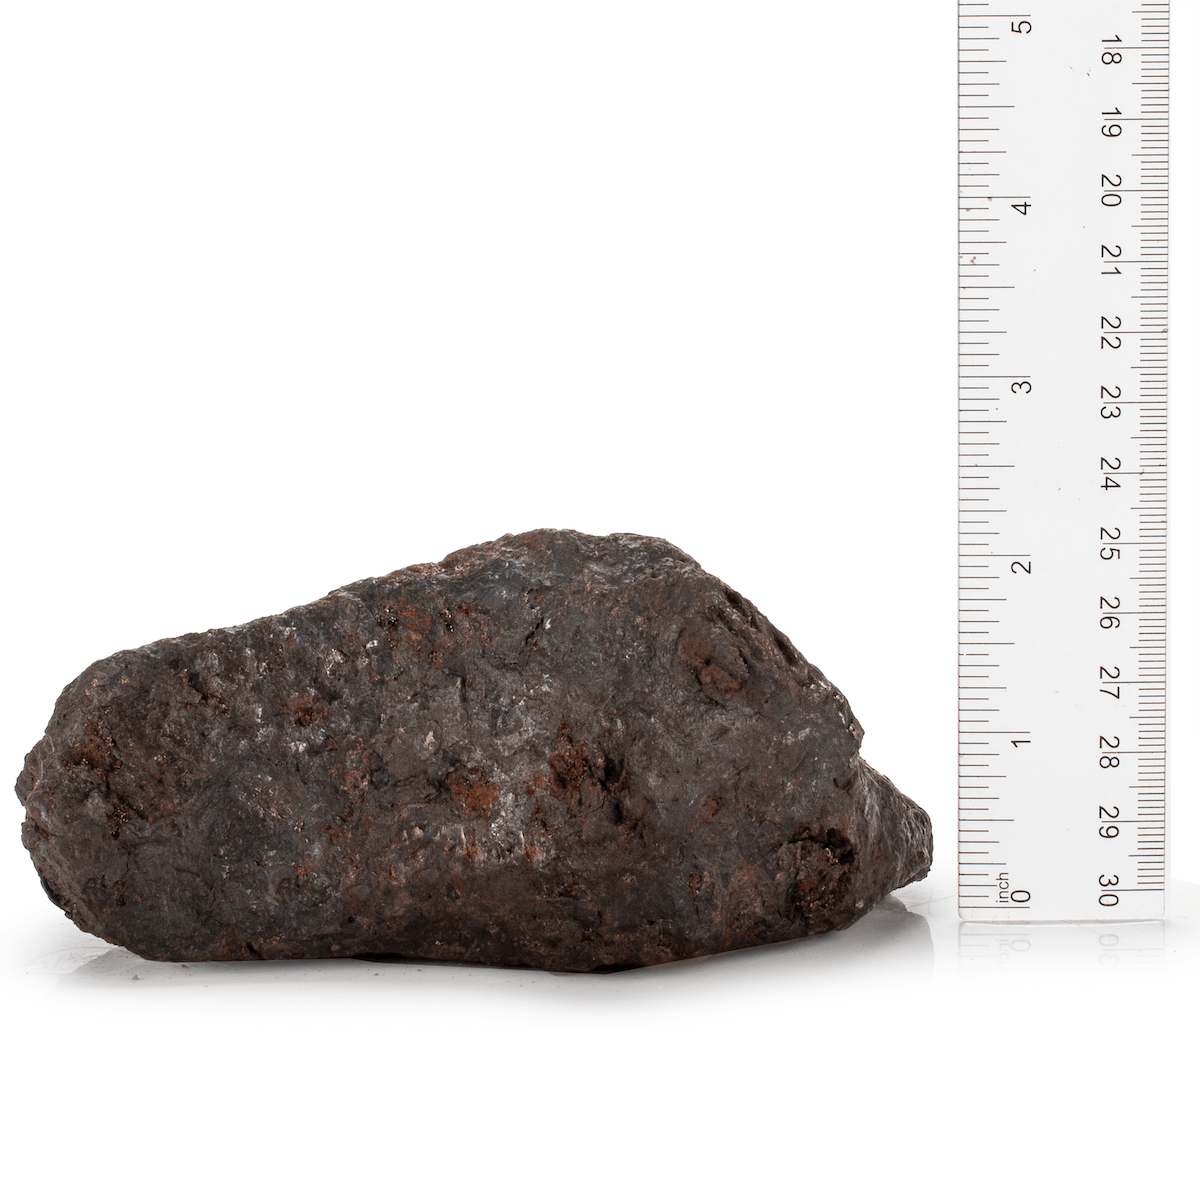 KALIFANO | Natural Campo Cielo - Del kilos for Sale 2.2 Iron Meteorite